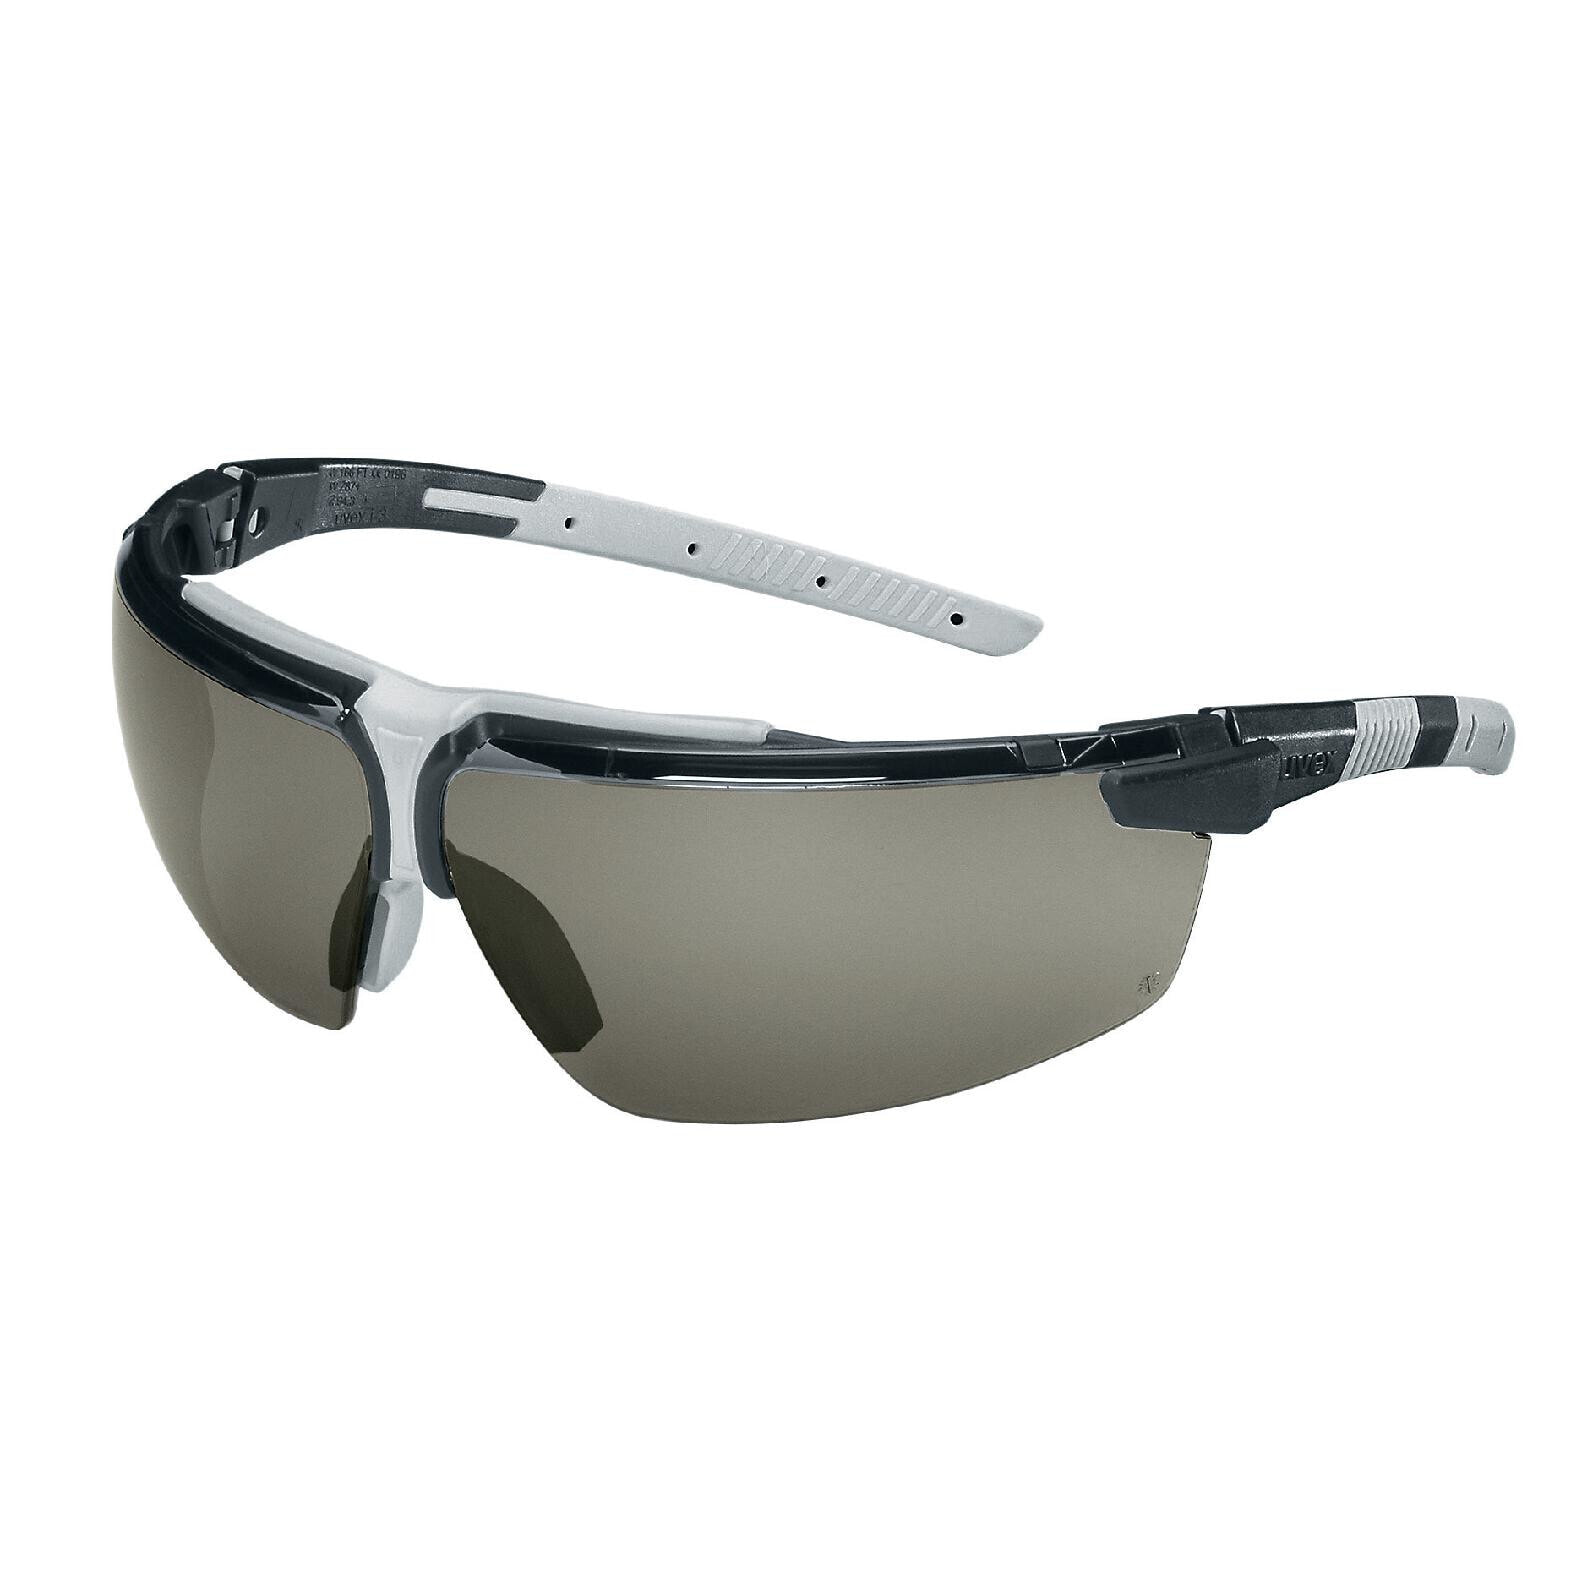 UVEX Arbeitsschutz i-3 9190 181 - Safety glasses - Any gender - EN 166 - EN 172 - Black - White - Grey - Transparent - Polycarbonate